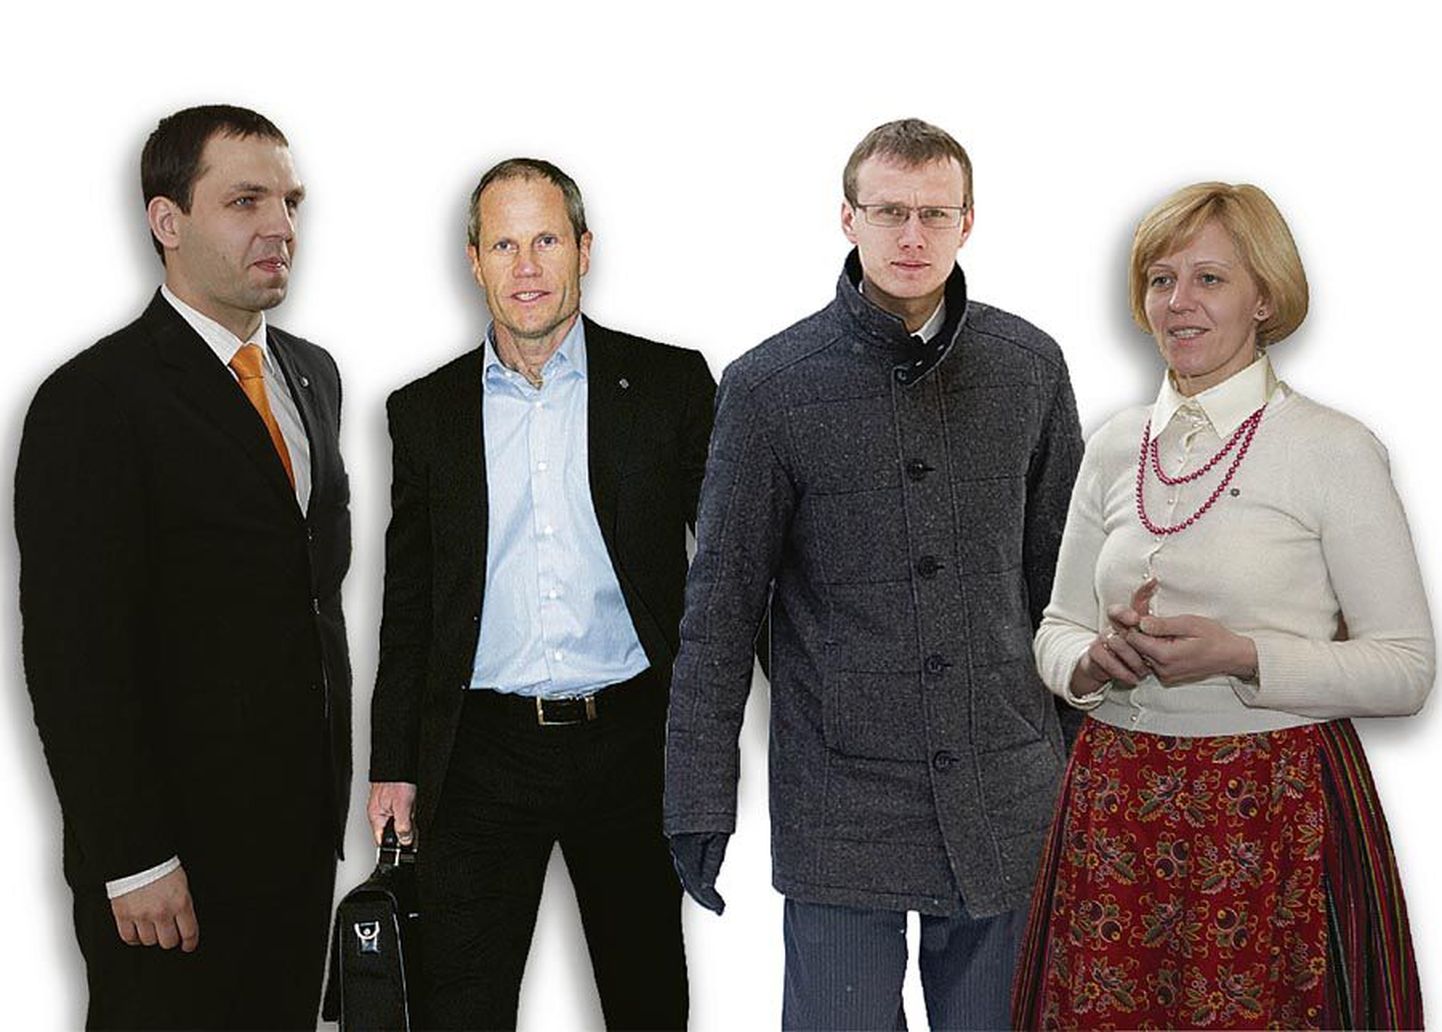 Riigikogu liikmed Siim Kabrits, Toomas Tõniste, Priit Toobal ja Annely Akkermann ostsid kuluhüvitiste eest oma parteide propageerimiseks ajalehte reklaampinda. Kõik neli on lubanud raha tagasi maksta.